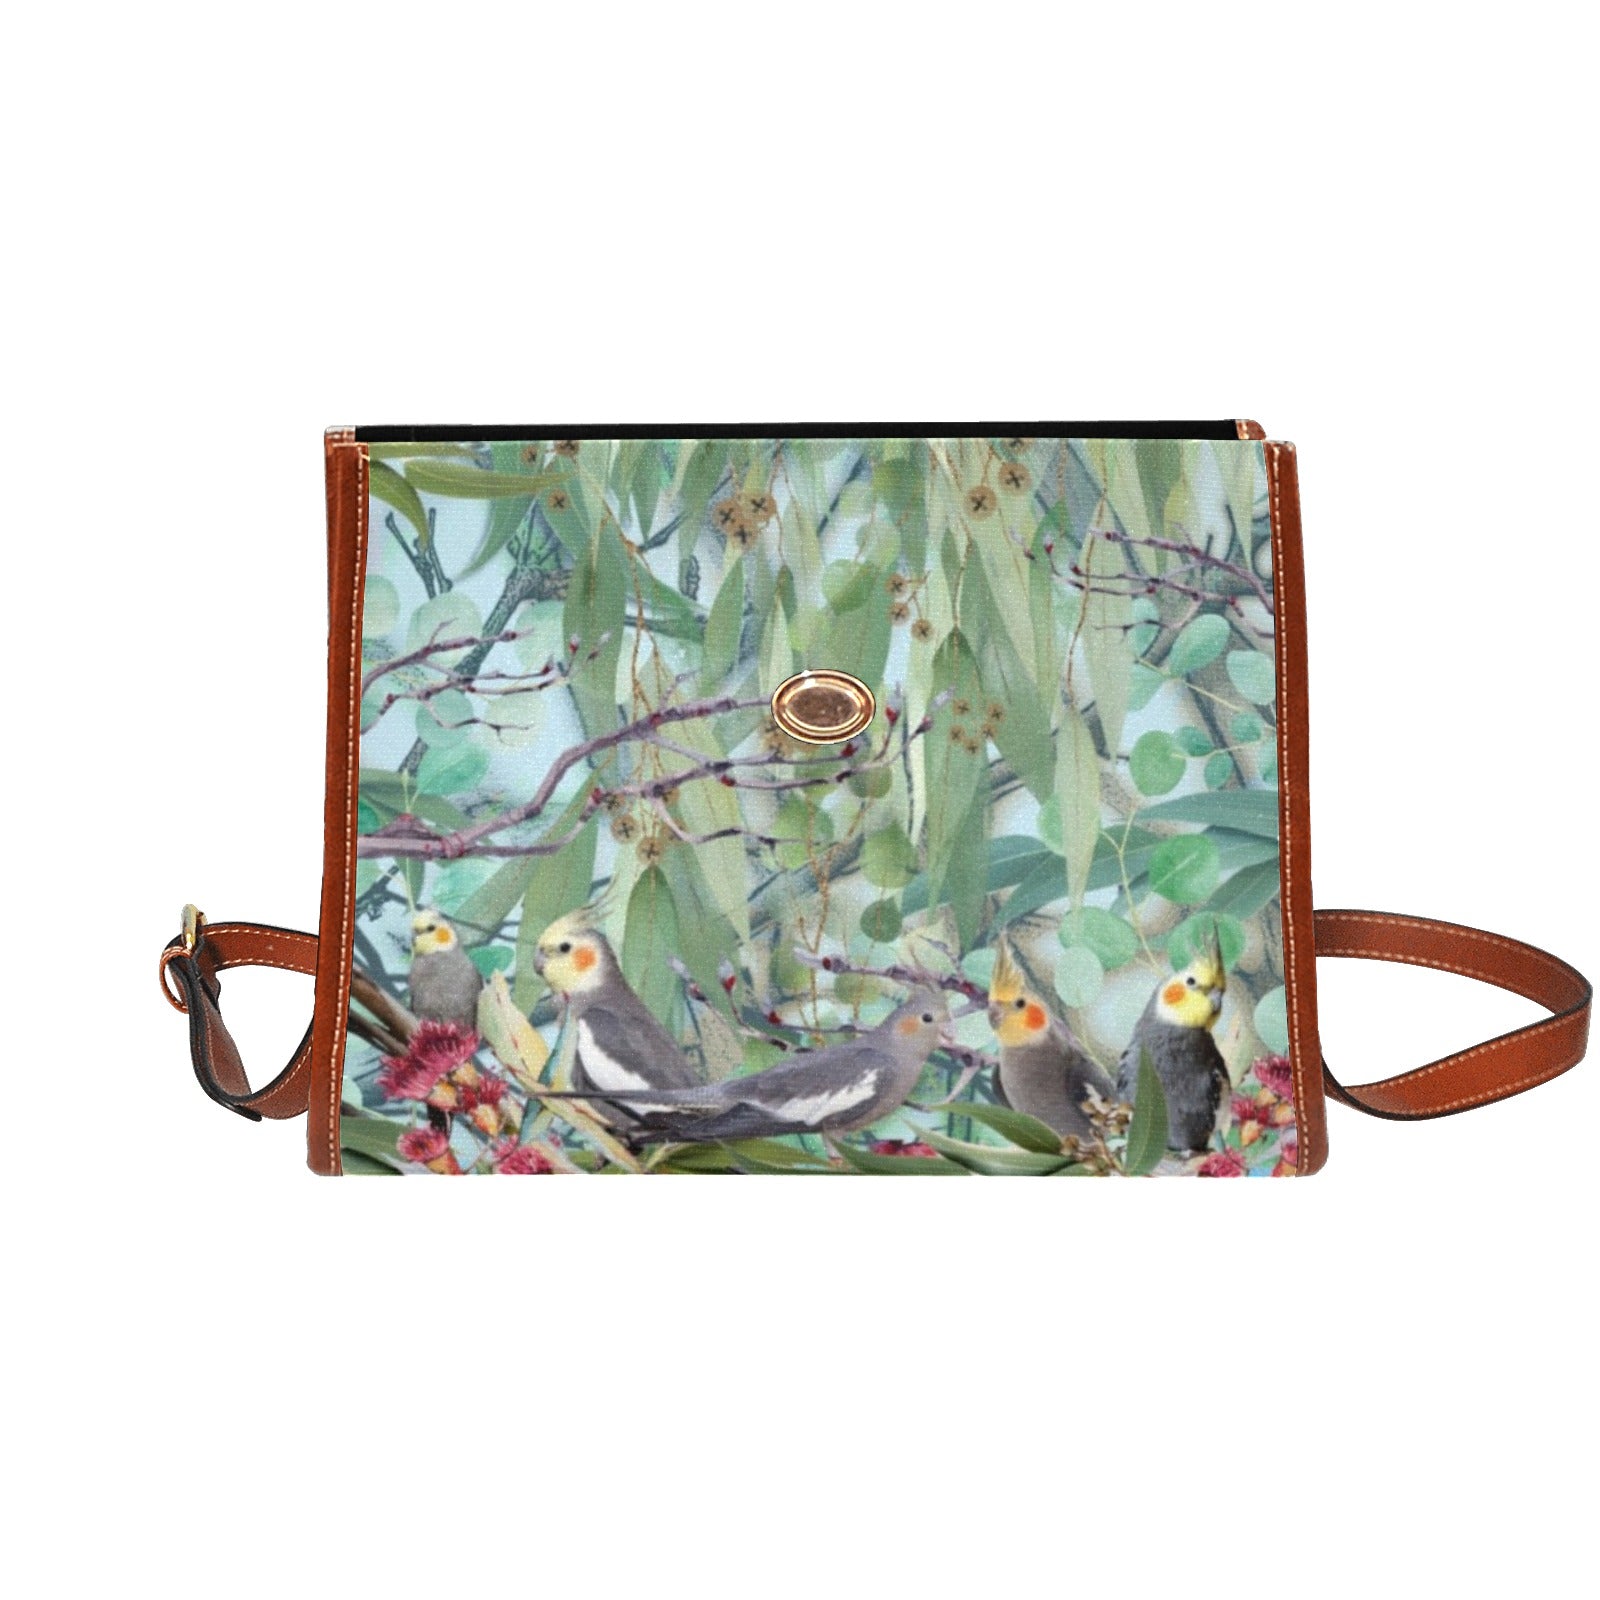 Cockatiel - Waterproof Canvas Handbag